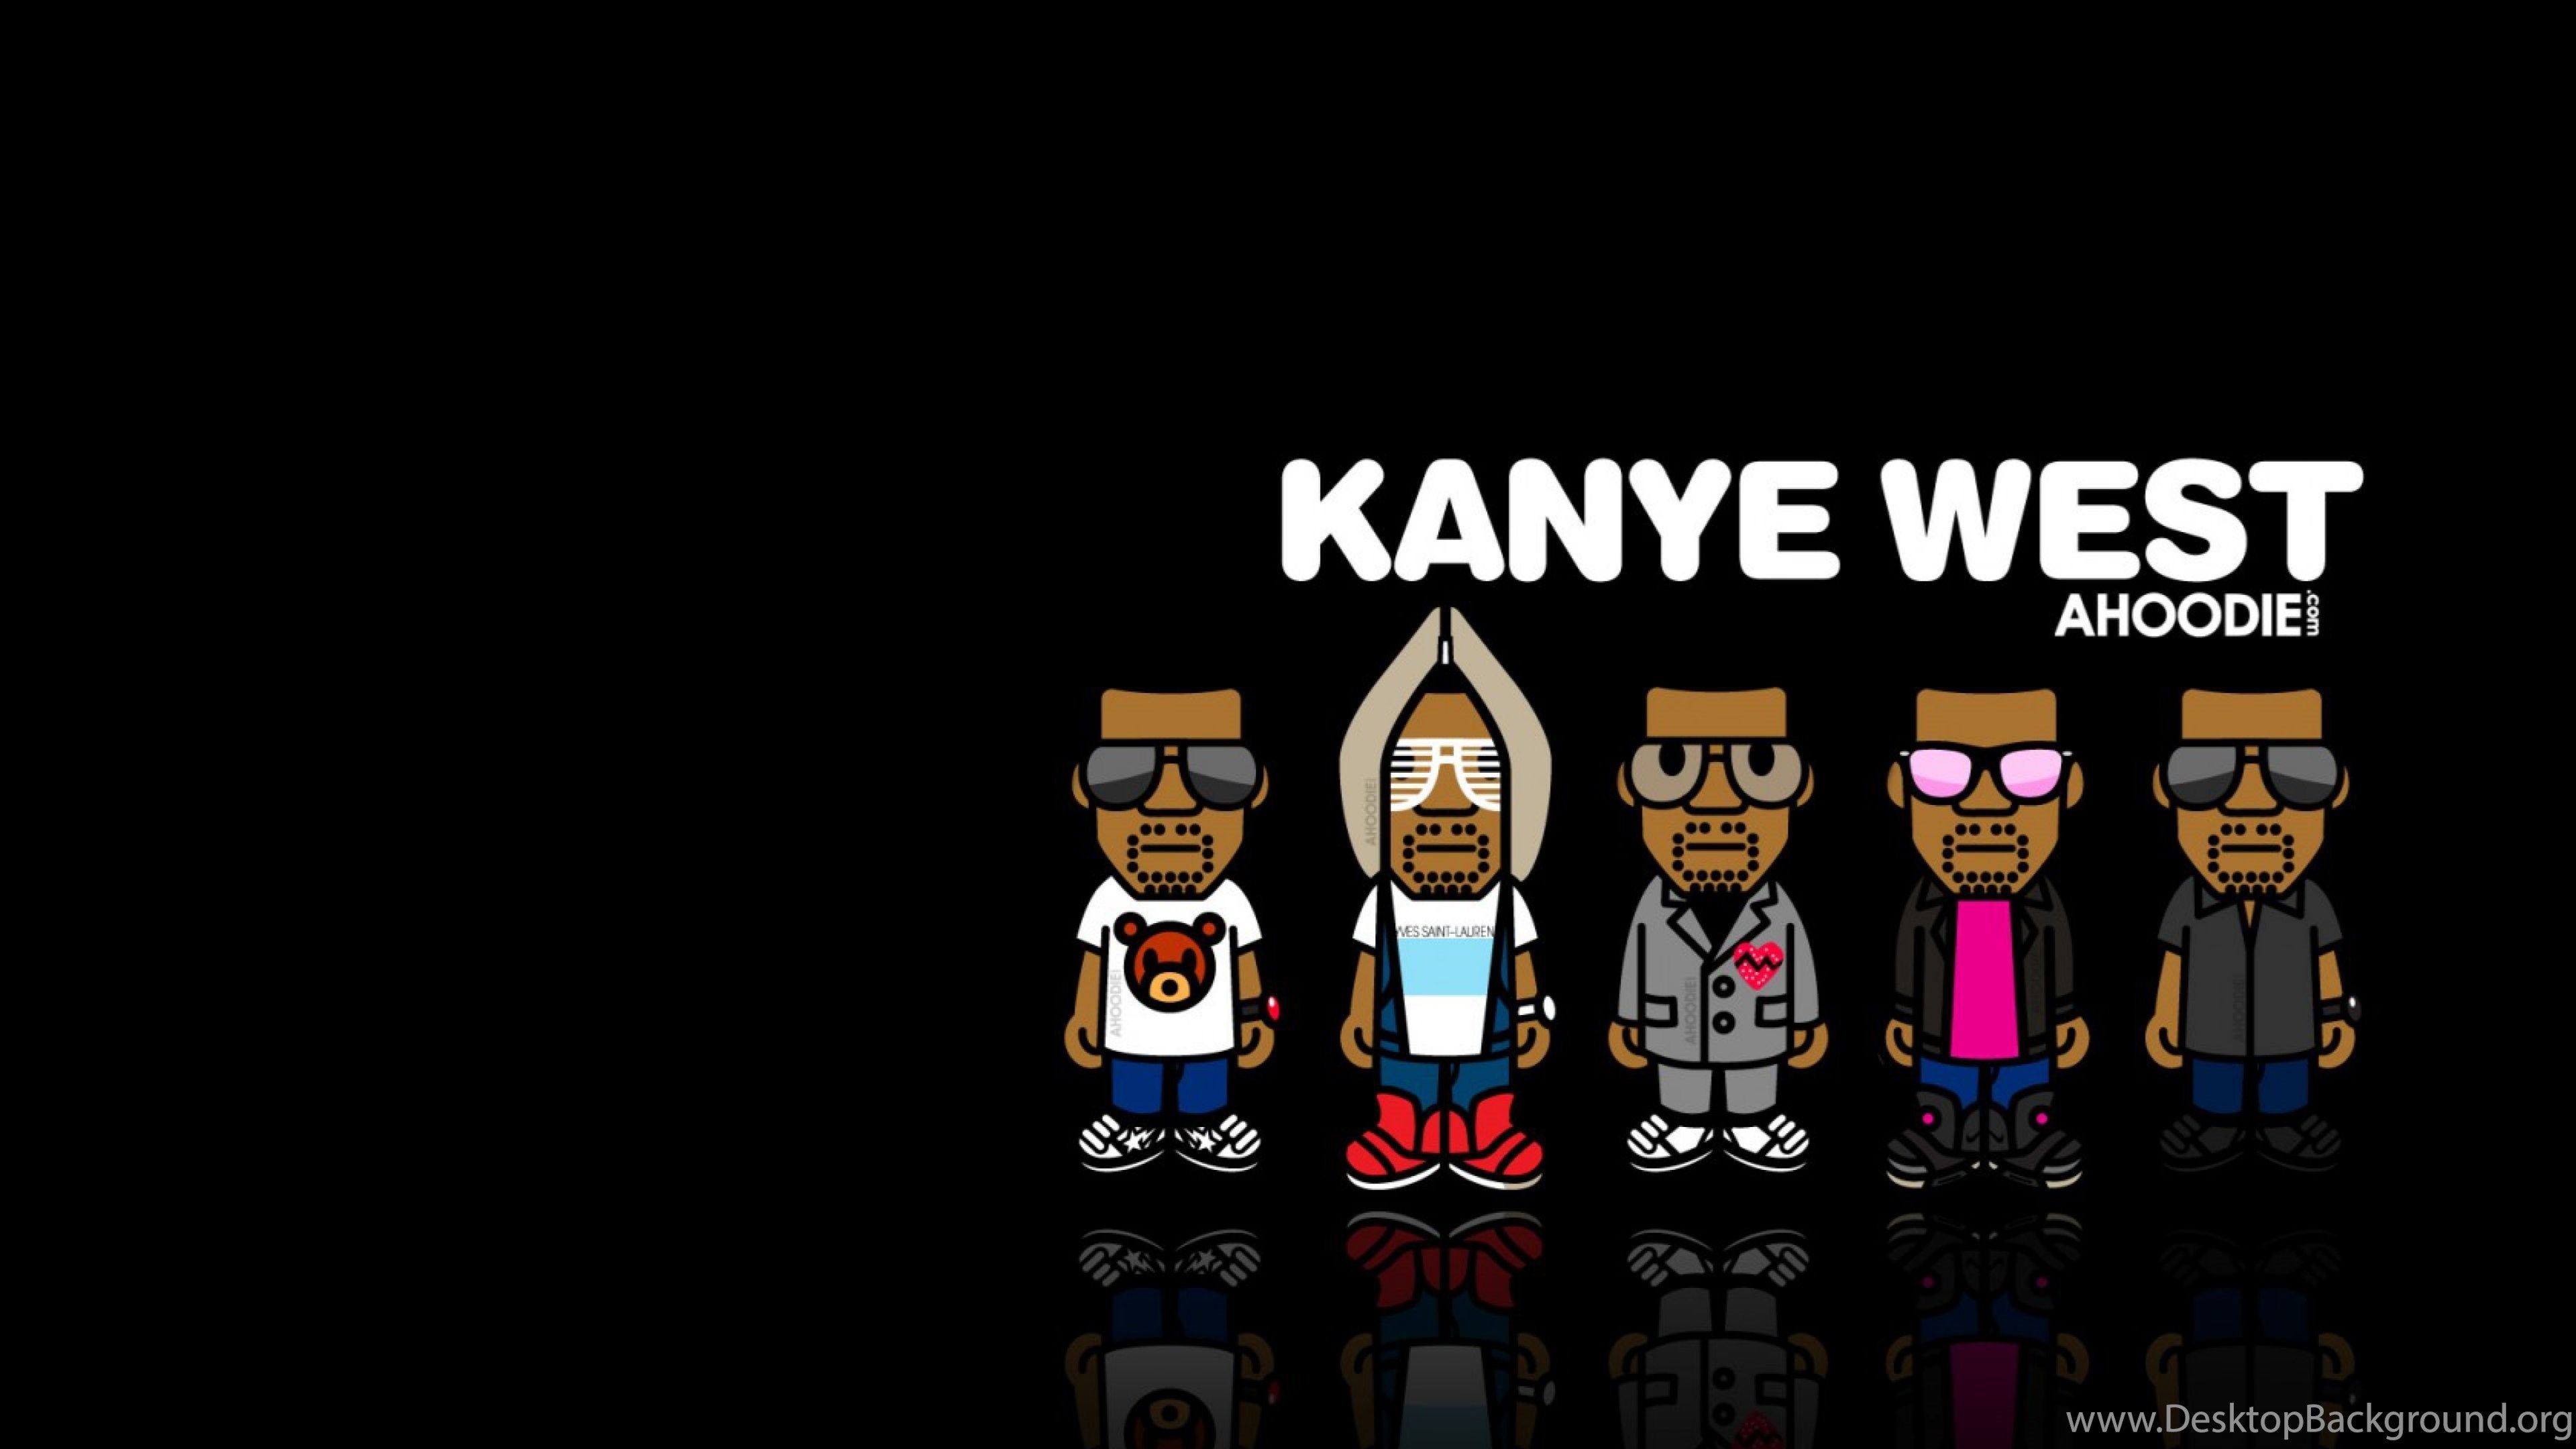 Download Wallpaper 3840x2160 Kanye West, Music, Image, Hip hop 4K. Desktop Background